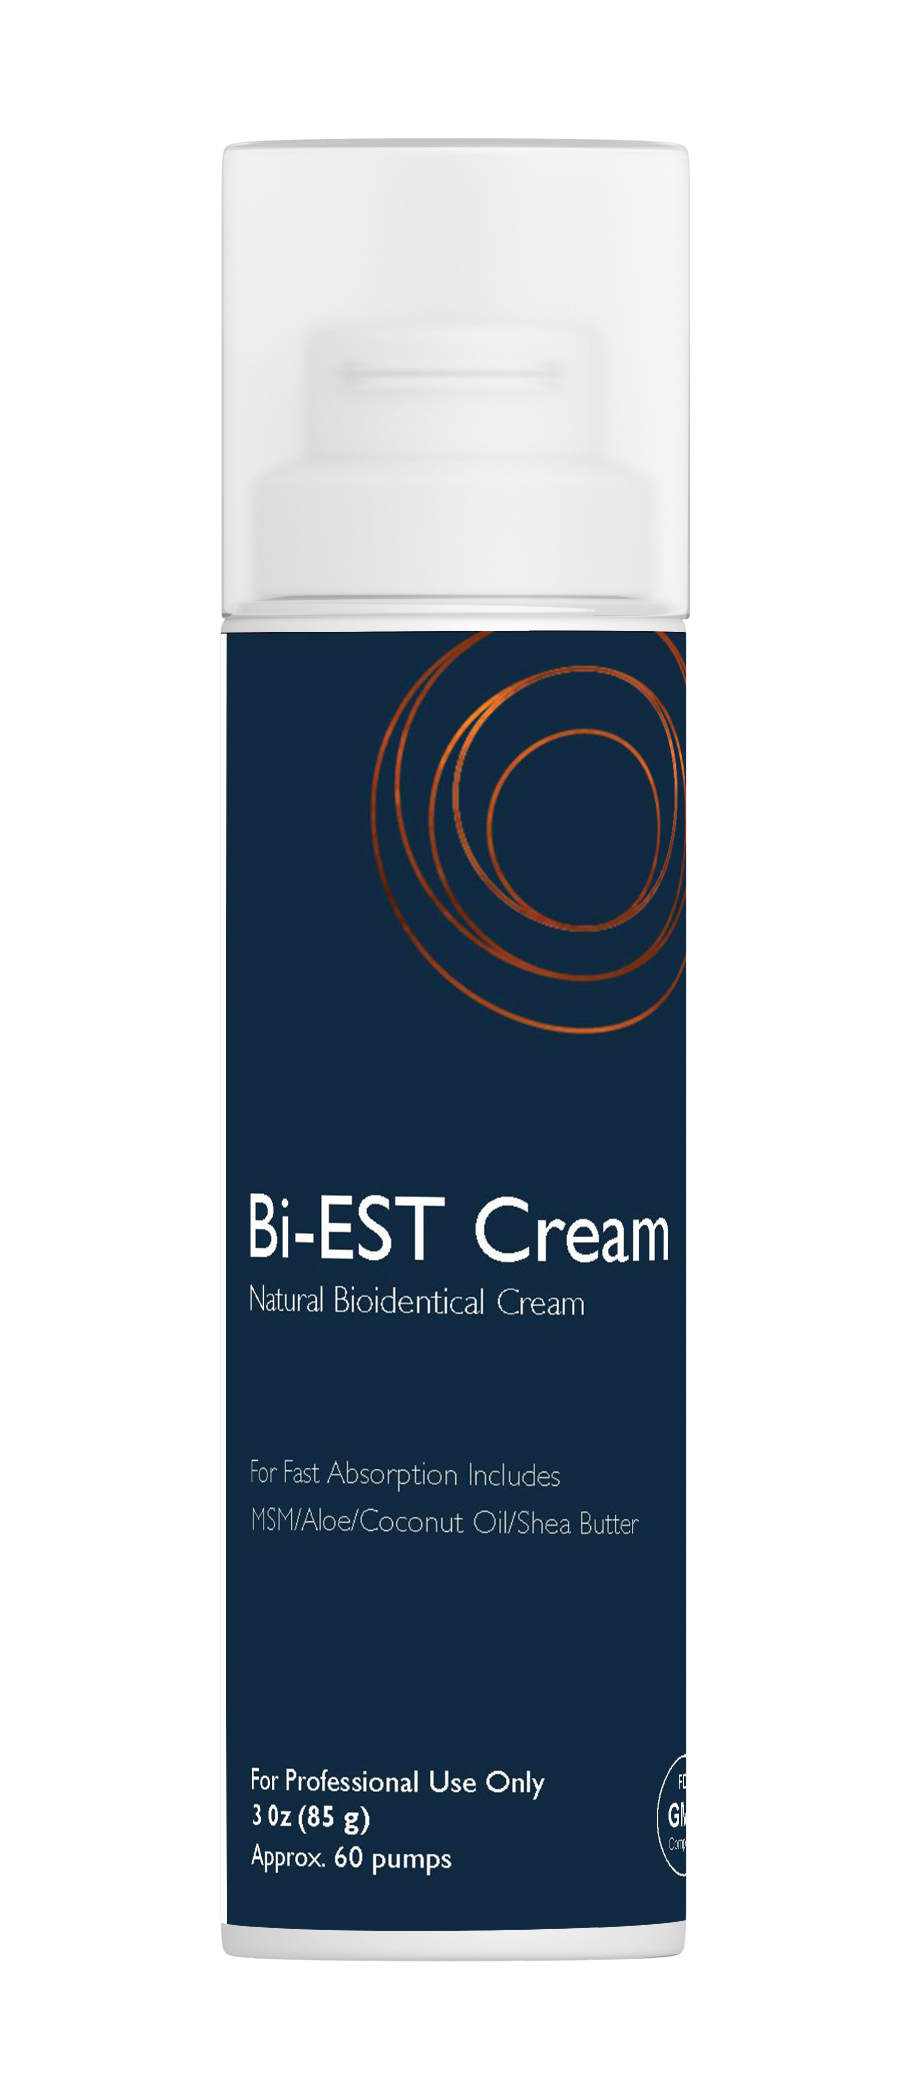 Bi-EST Cream